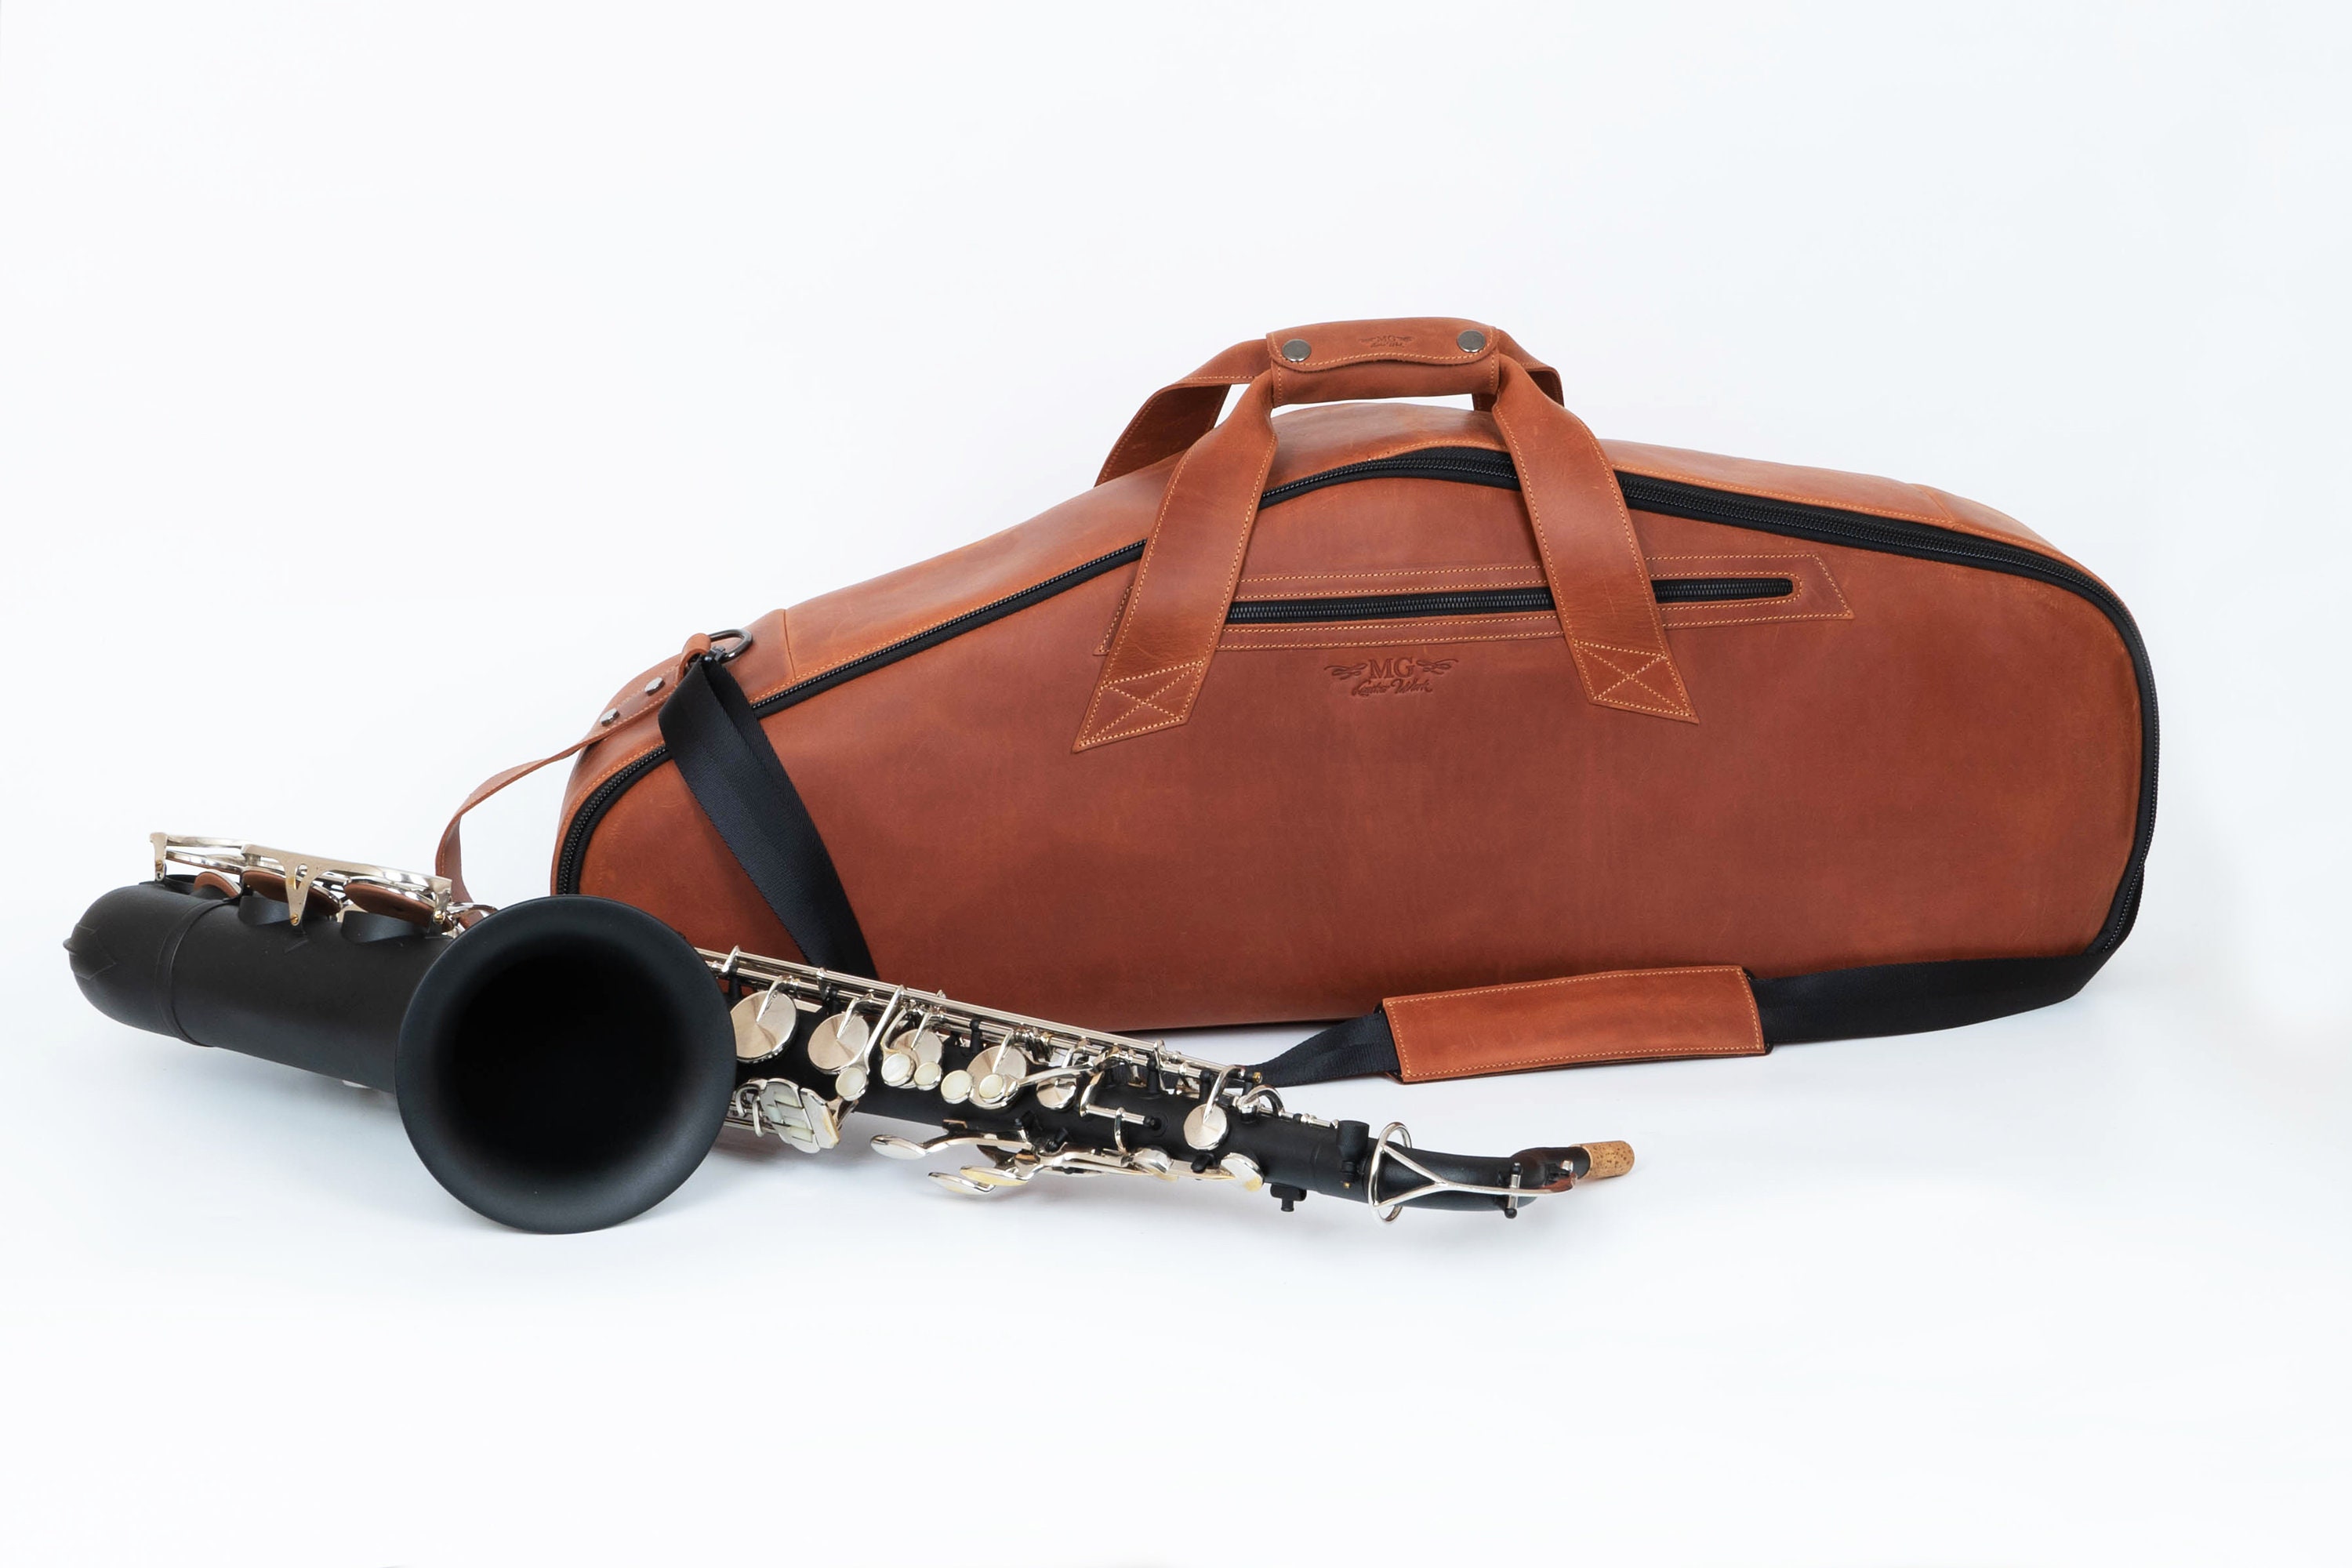 Acheter Saxophone de poche Mini Saxophone Portable petit Saxophone avec sac  de transport Instrument à vent